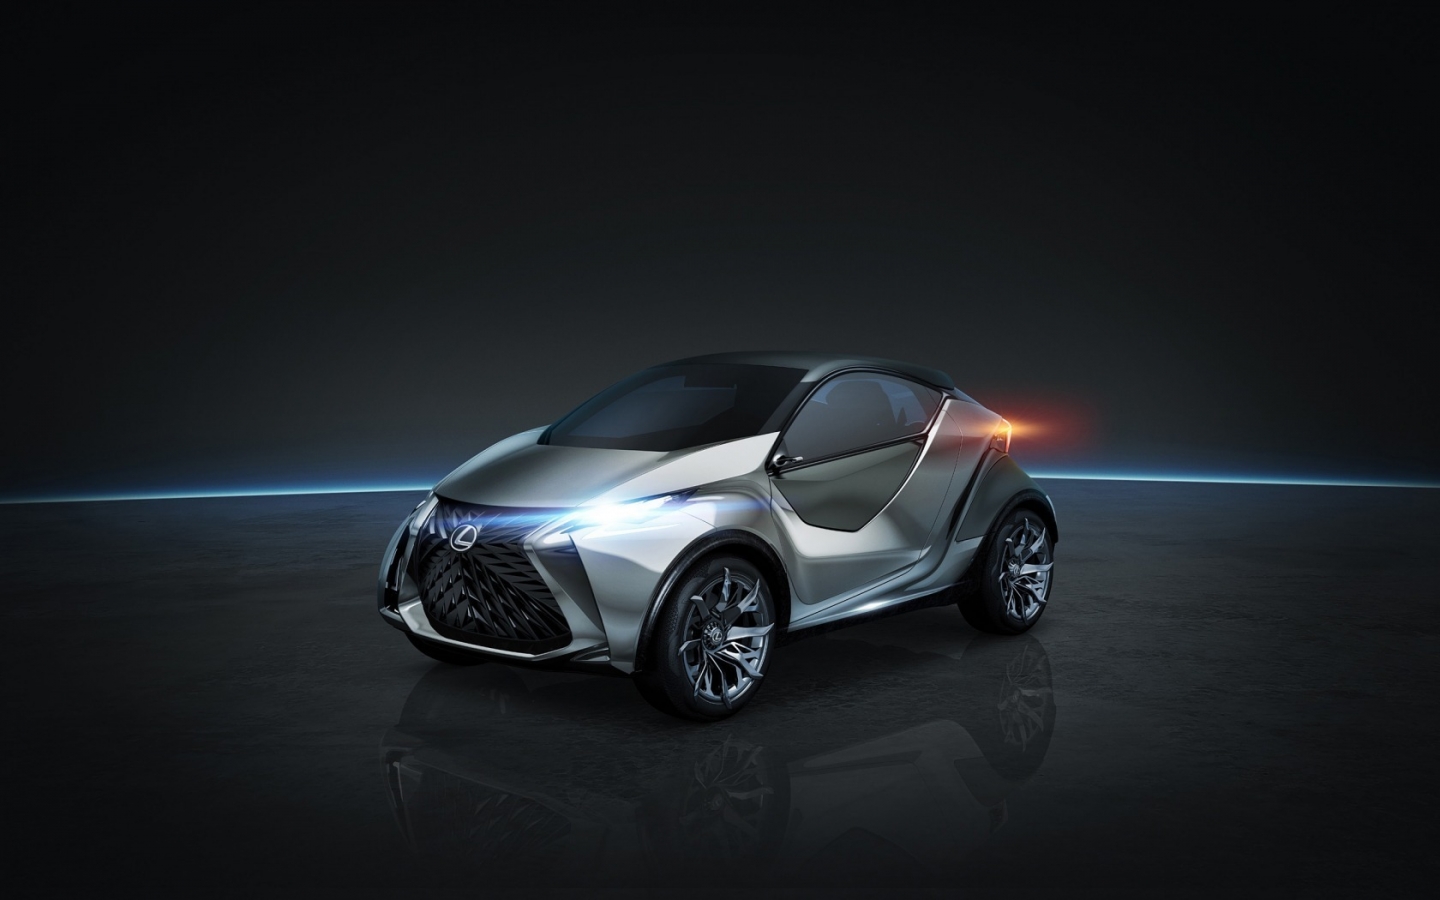 2015 Lexus LF SA Concept for 1440 x 900 widescreen resolution